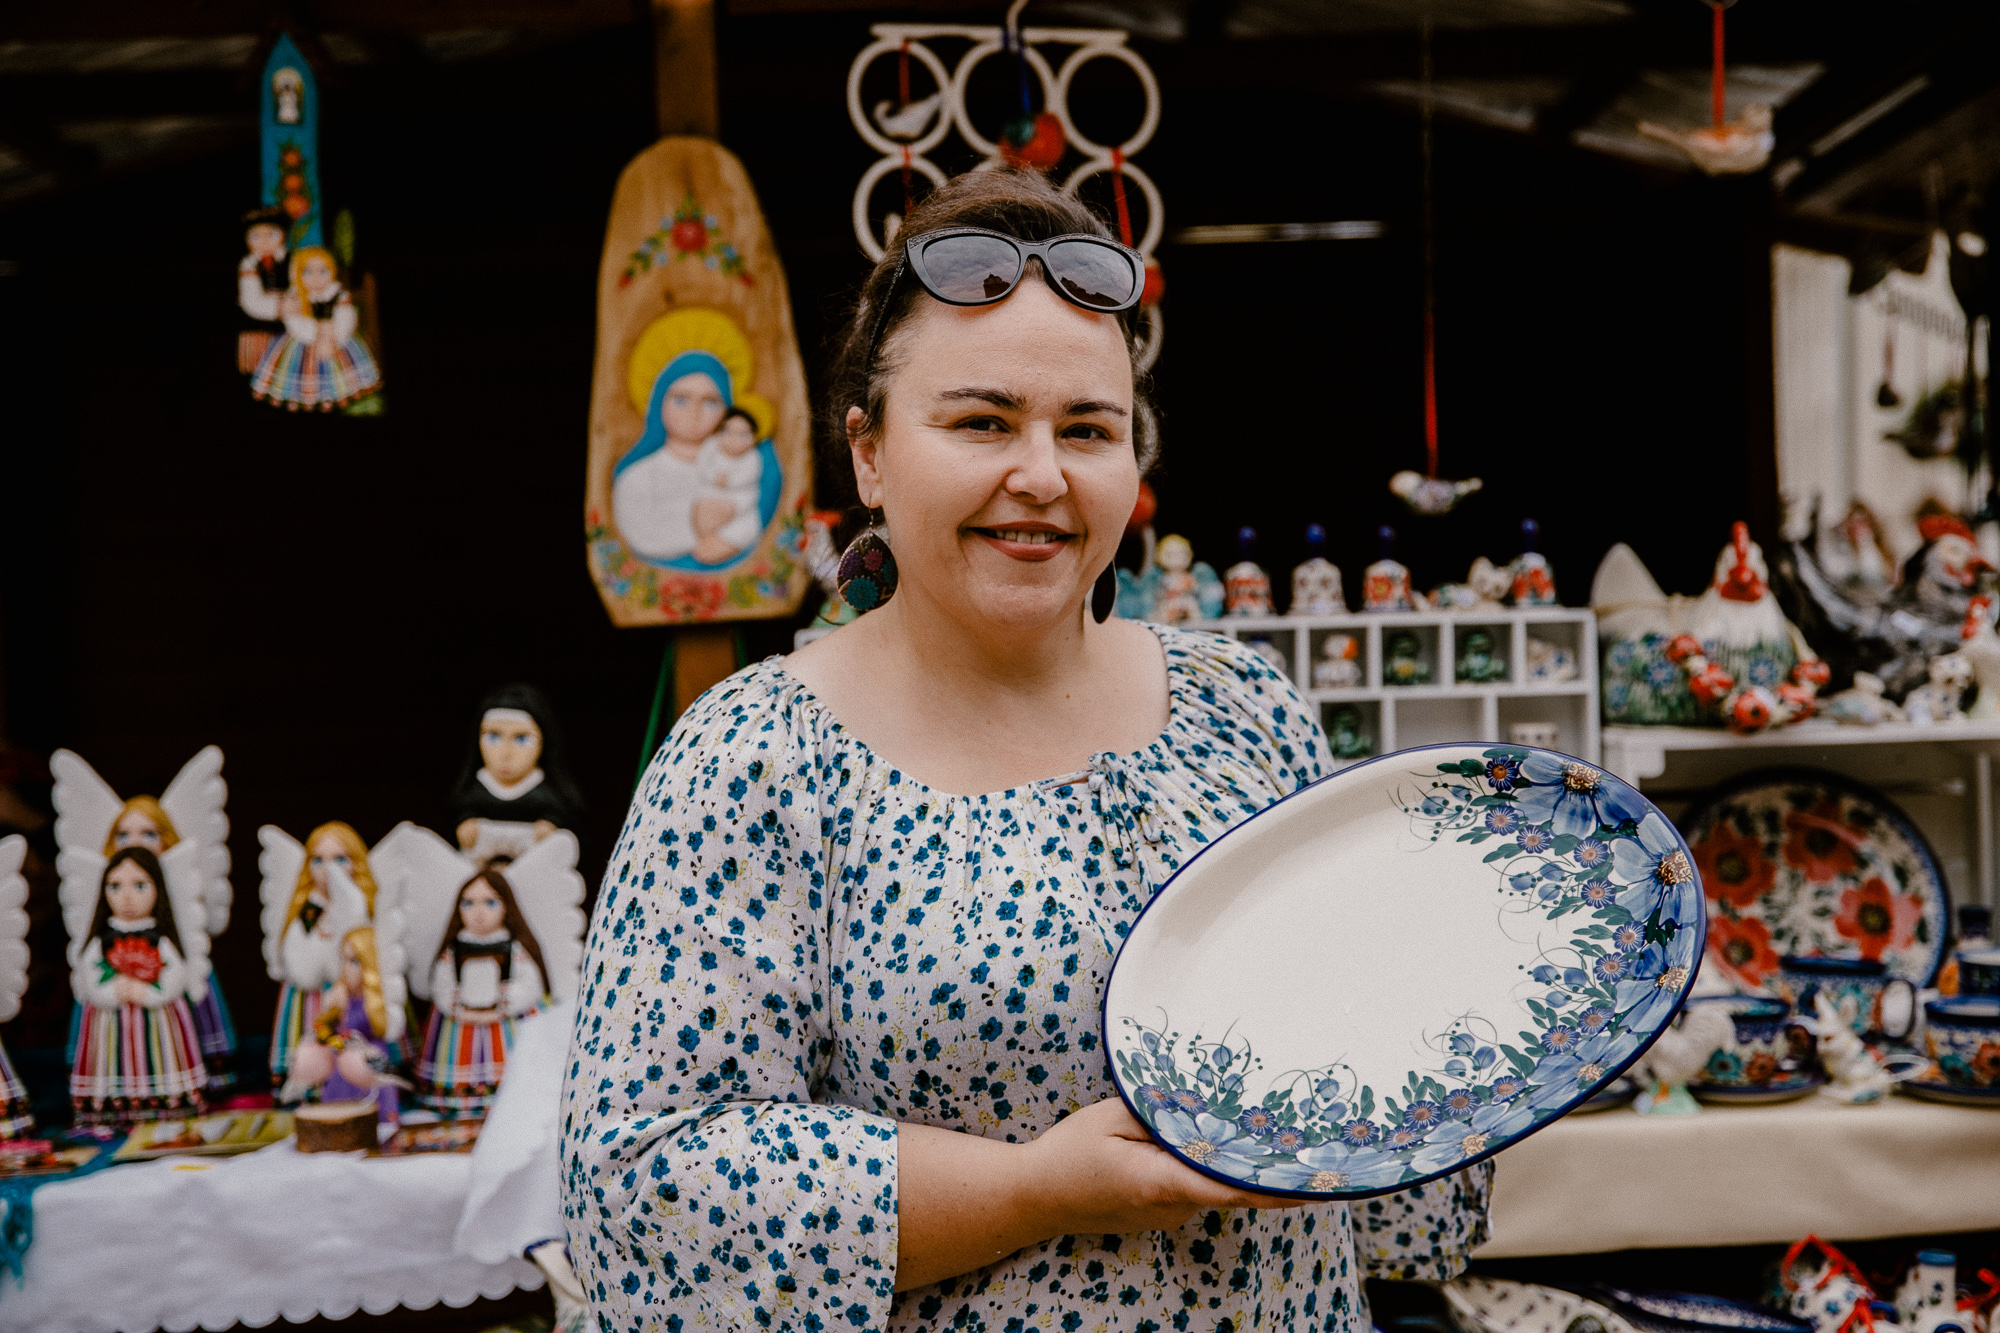 Beata Woźniak trzyma w ręce własnoręcznie zrobiony talerz ceramiczny z namalowanymi kwiatami.